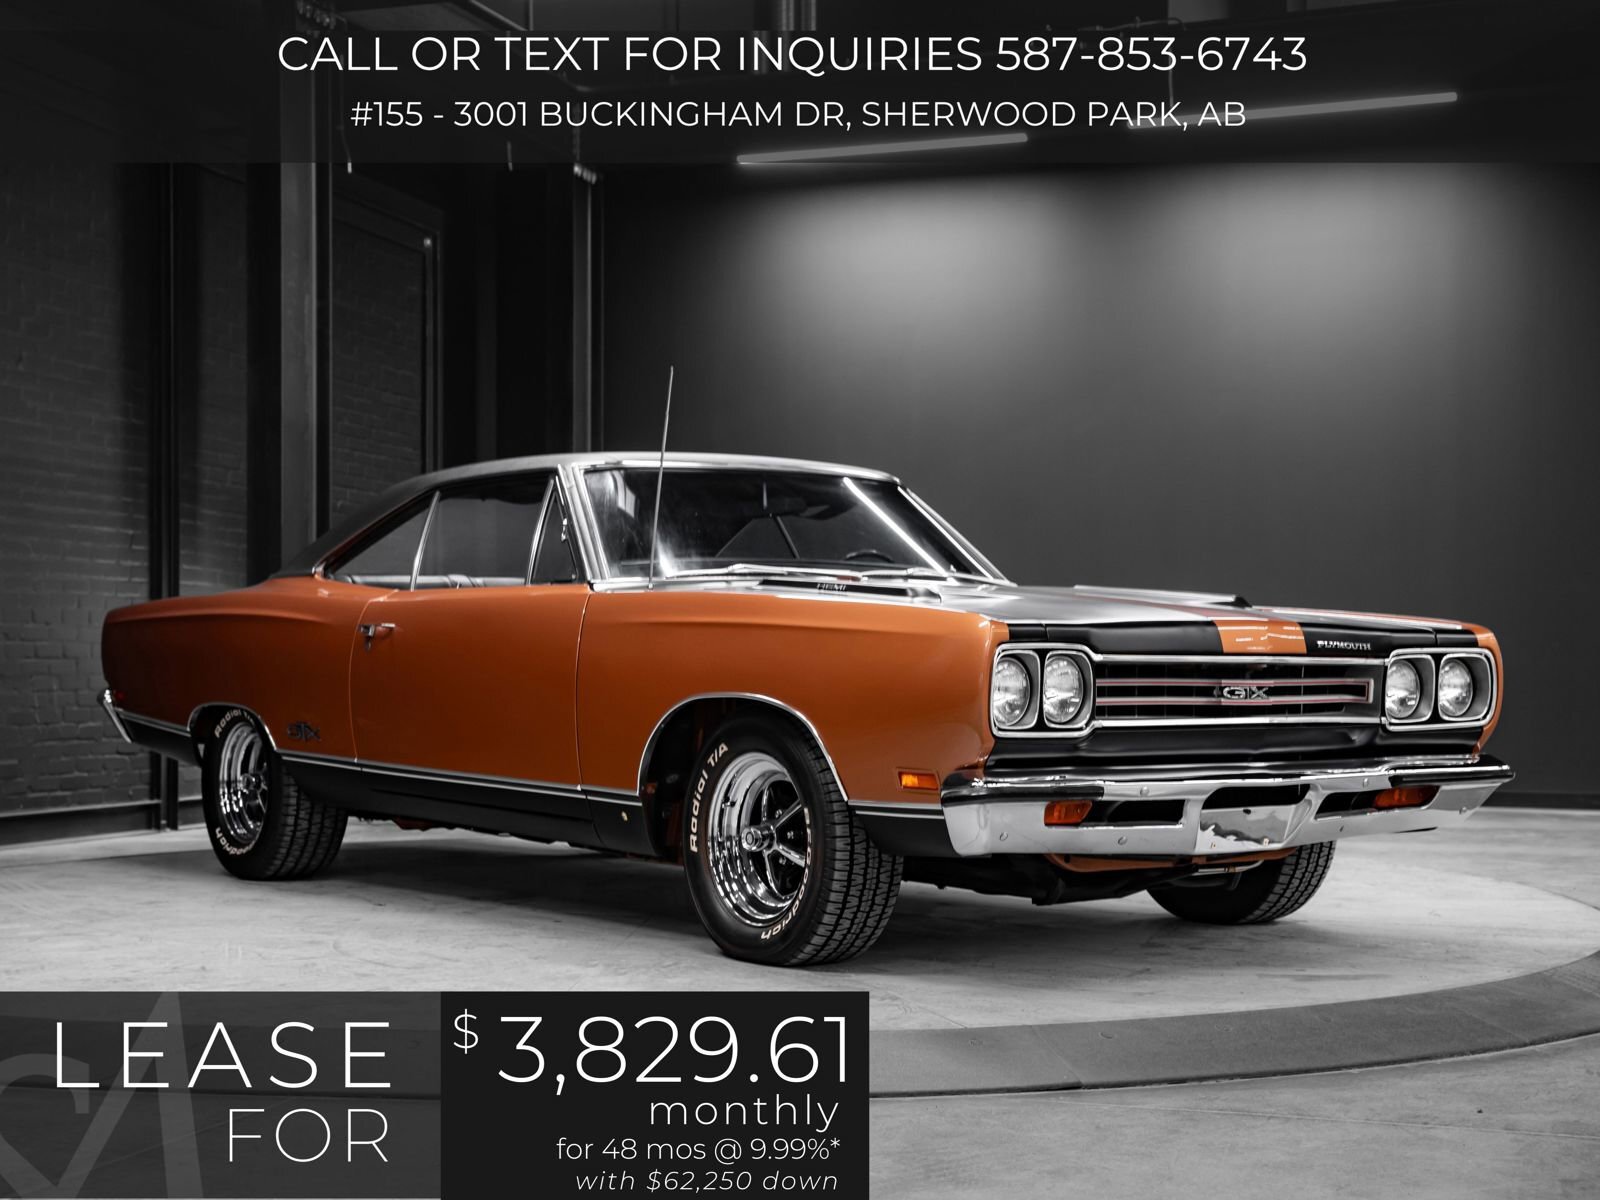 1969 Plymouth GTX | 1 of 99 HEMI GTX Automatics | 58,000 Original Mi